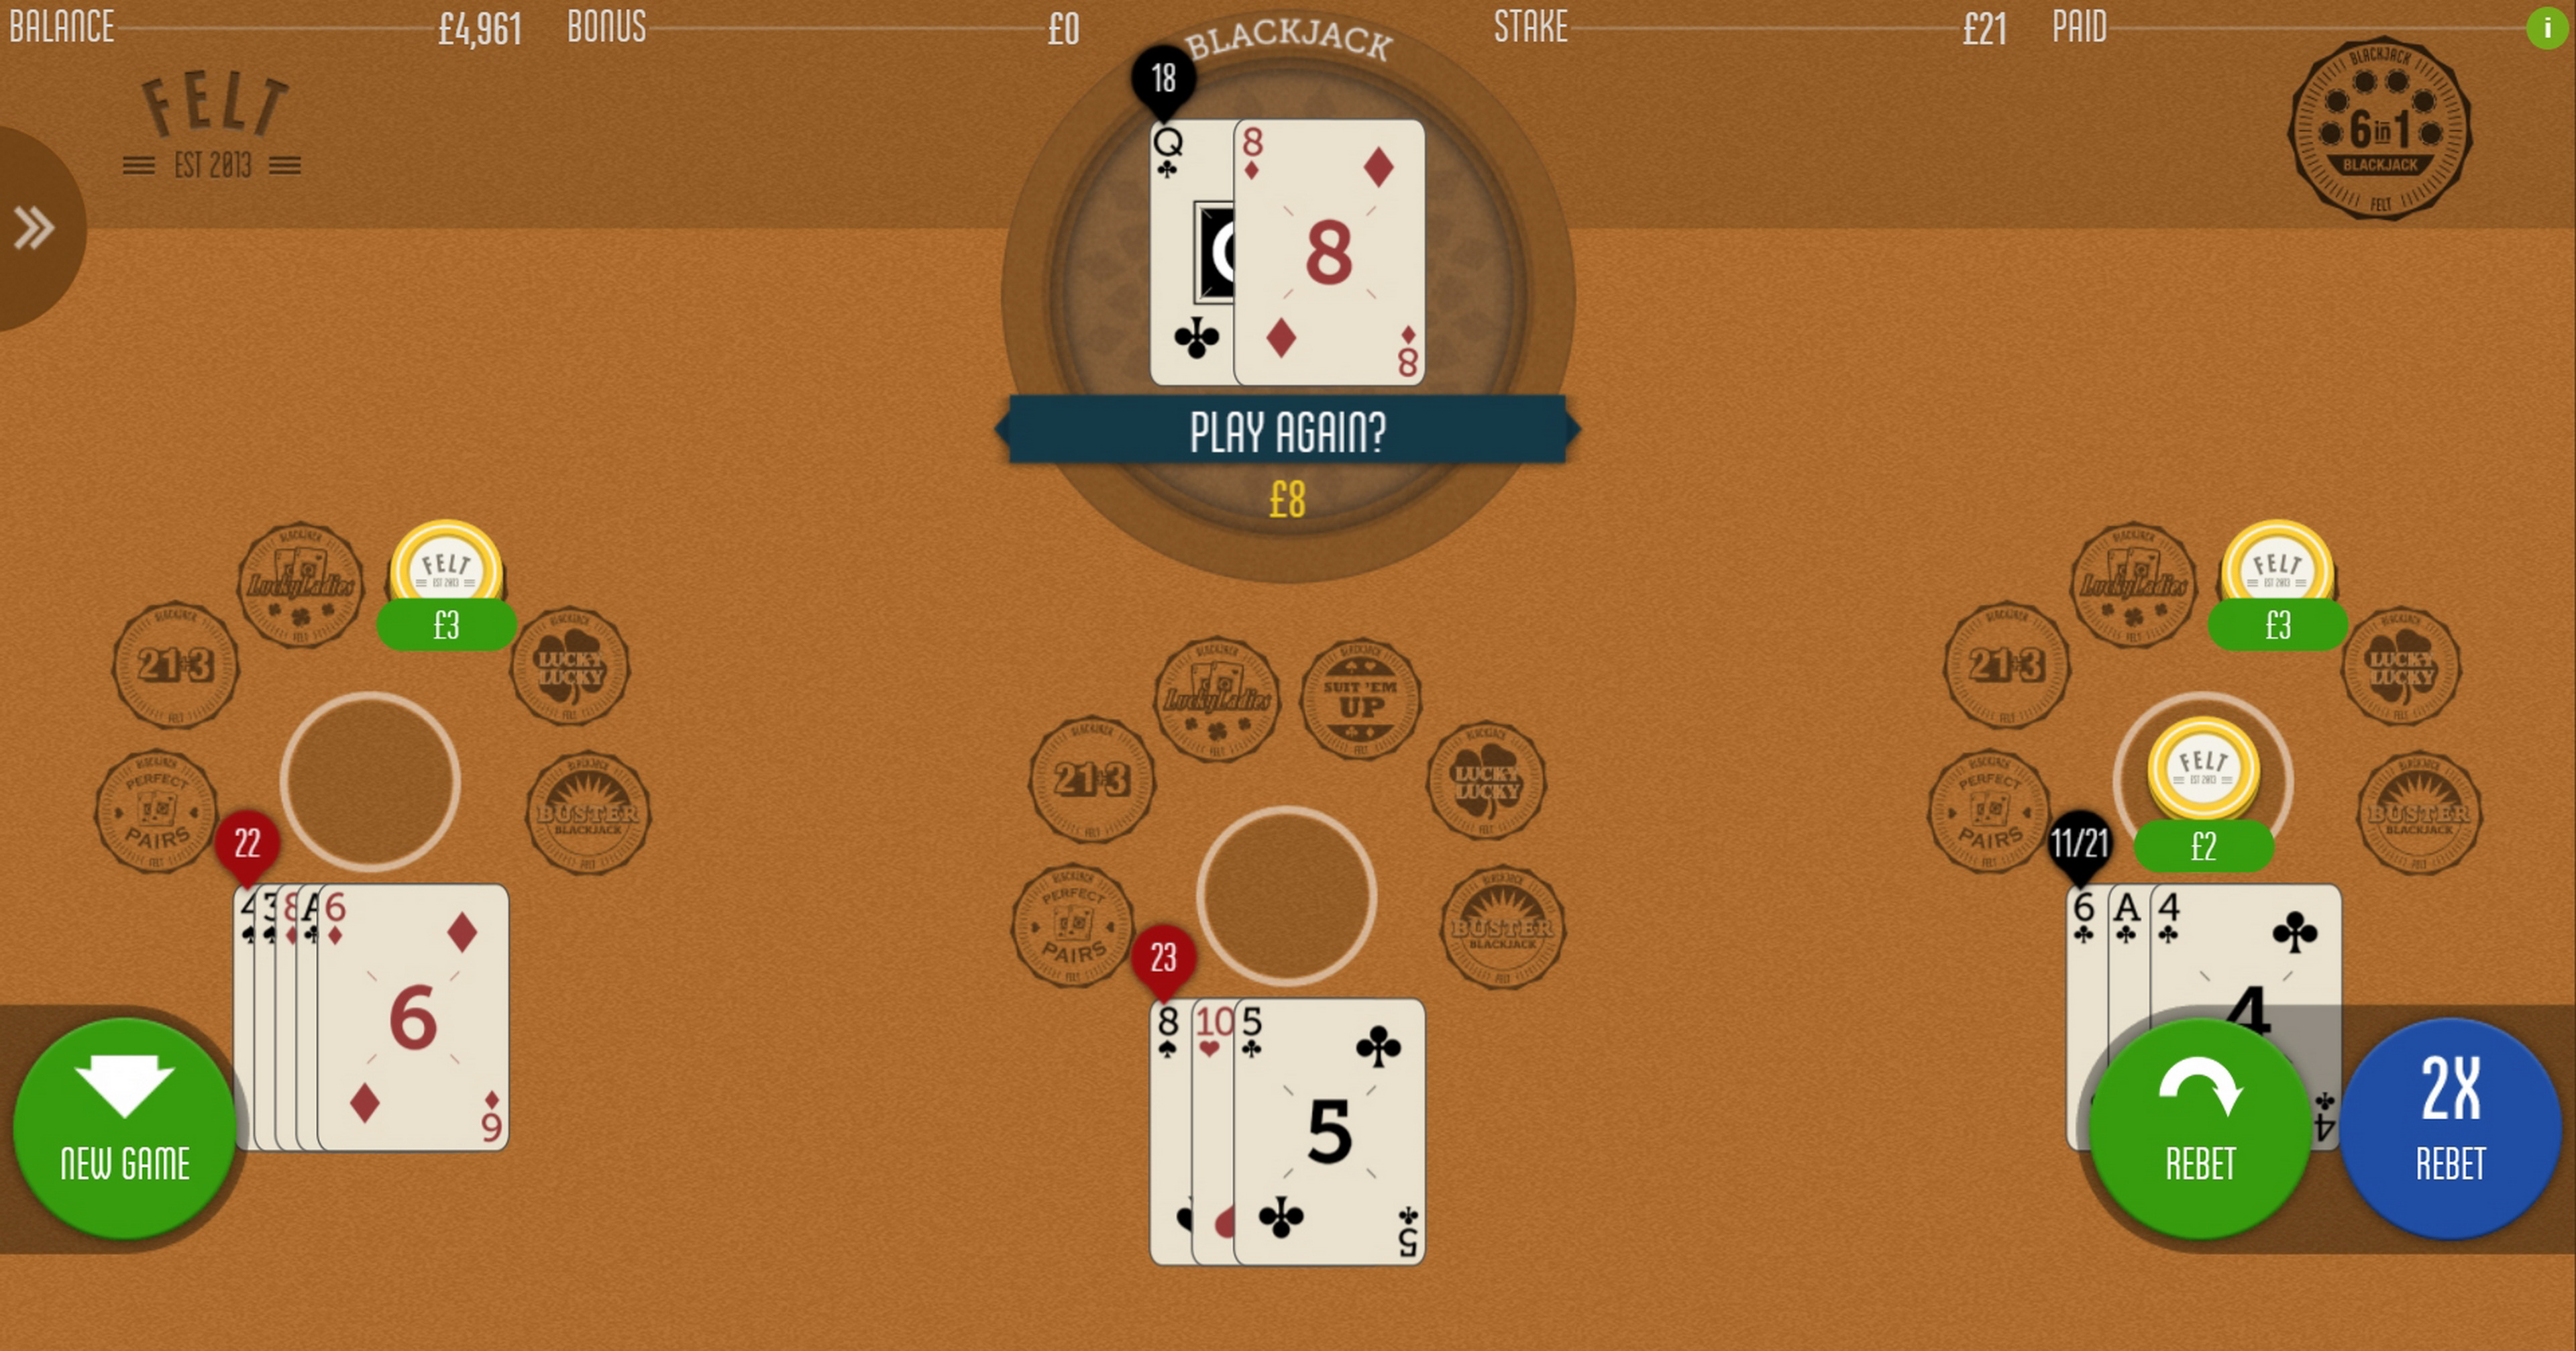 Win Money in 6 in 1 Blackjack Free Slot Game by Felt